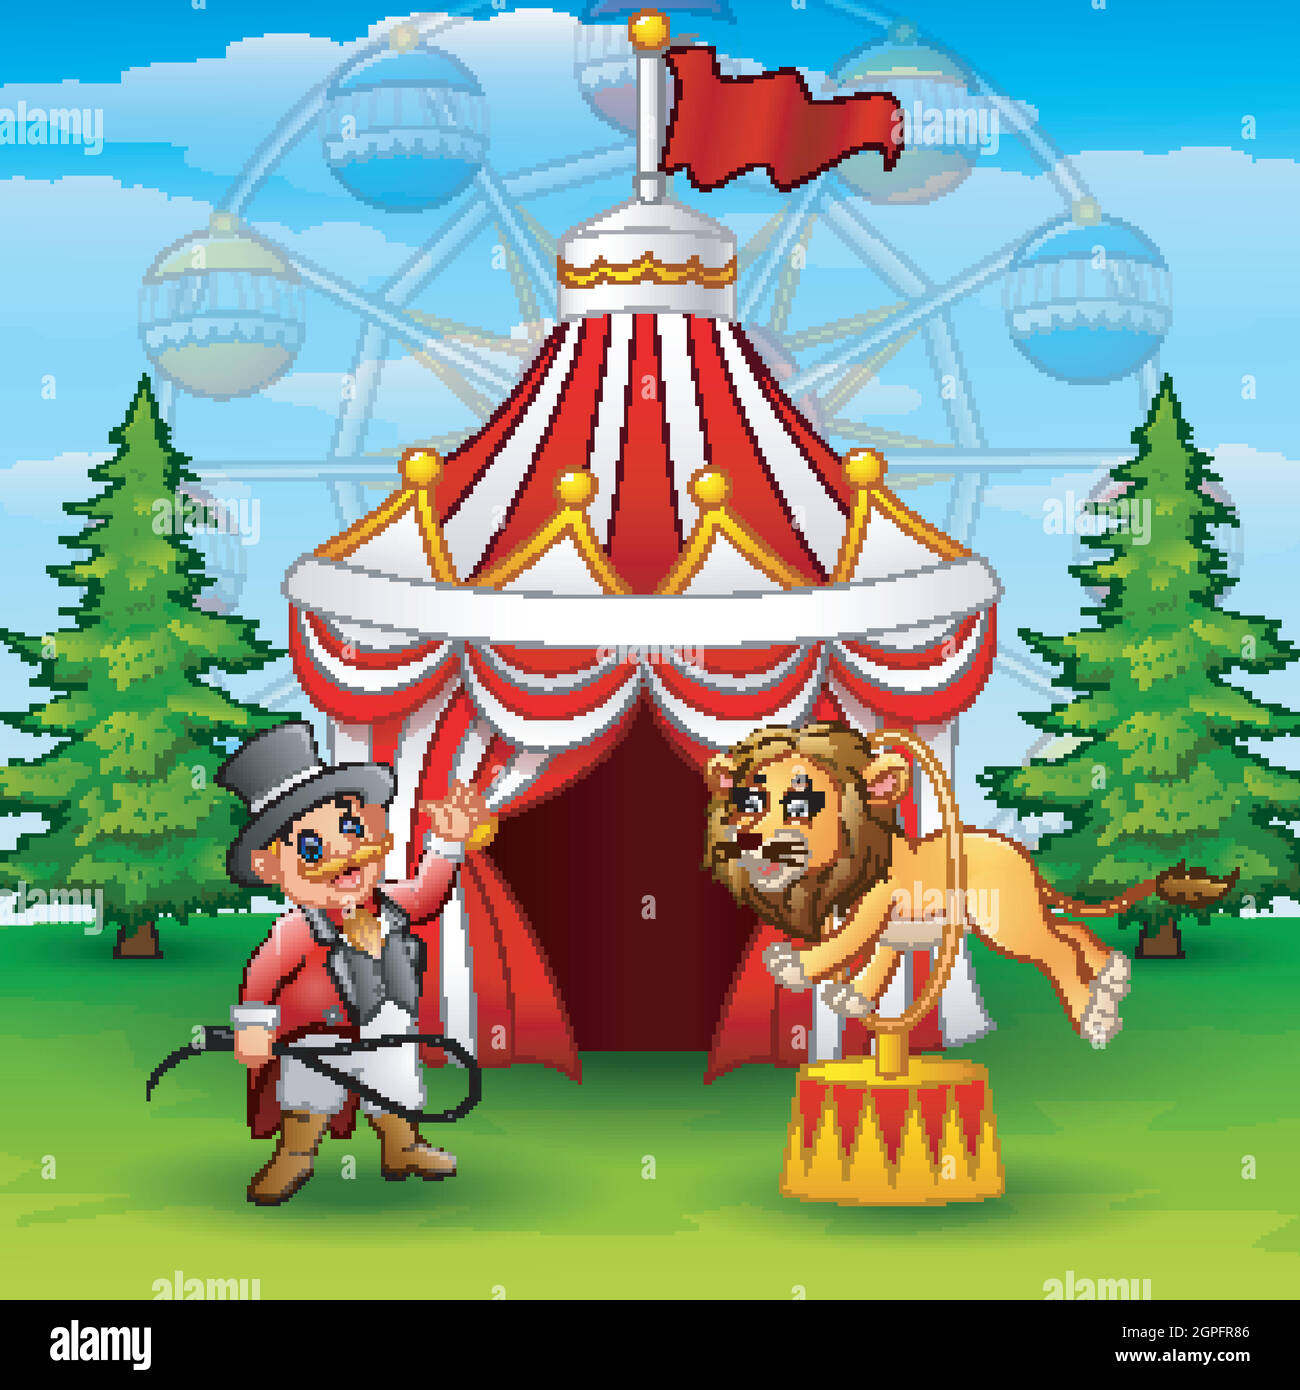 Cartoon tamer e leone sullo sfondo della tenda del circo Illustrazione Vettoriale